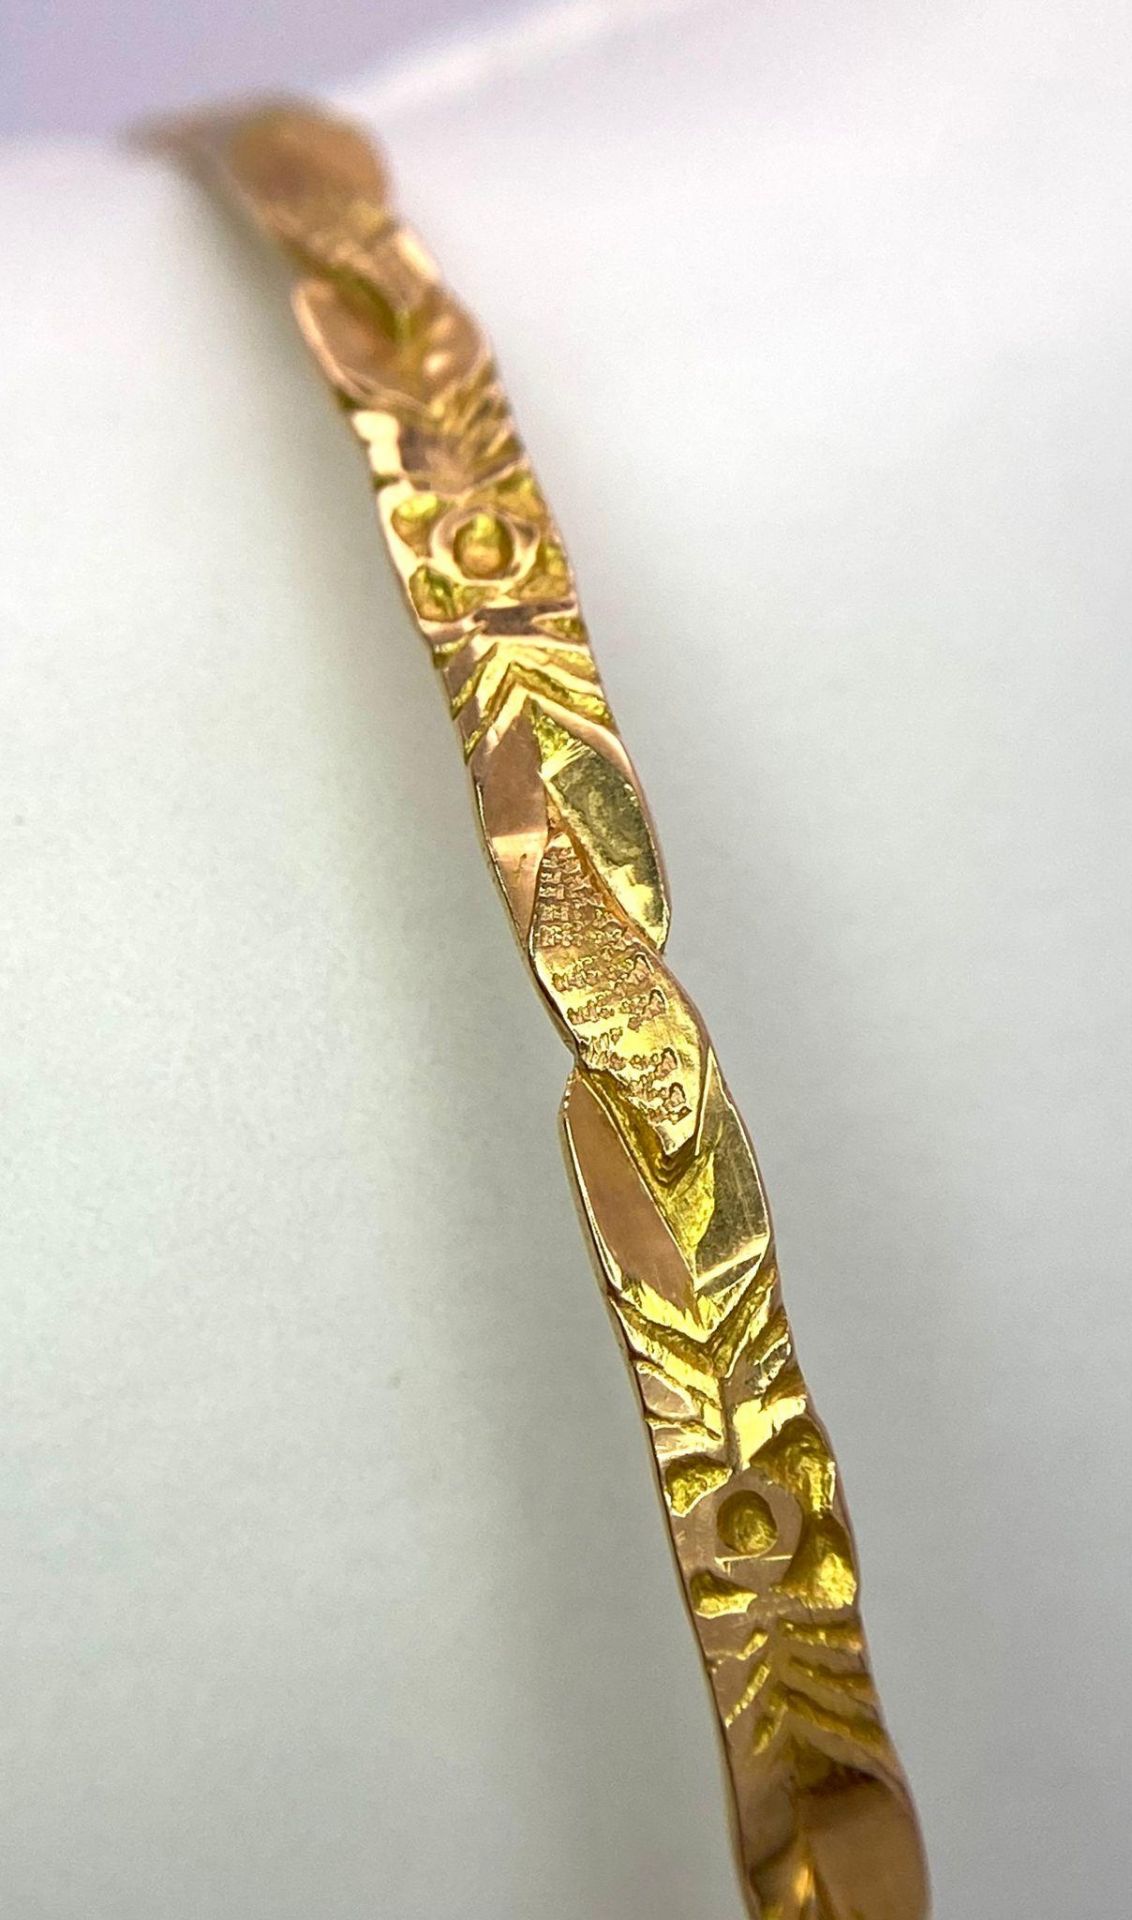 A Vintage 18K Gold Bangle with Decorative Twist Design. 7.67g weight. - Bild 3 aus 4